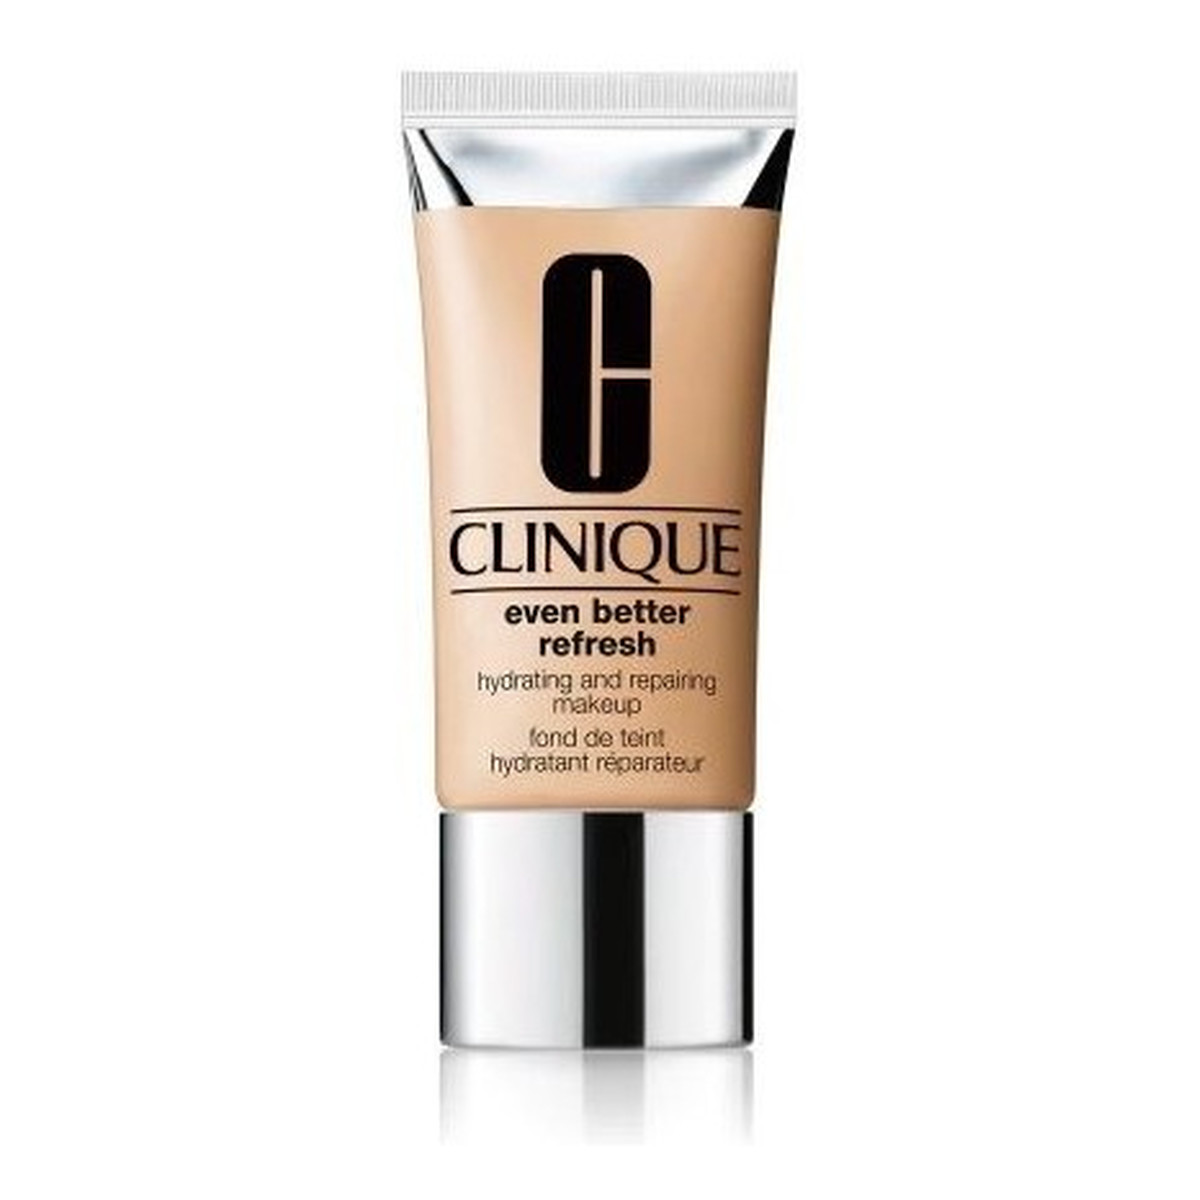 Clinique Even Better Refresh™ Makeup nawilżająco-regenerujący podkład do twarzy 30ml